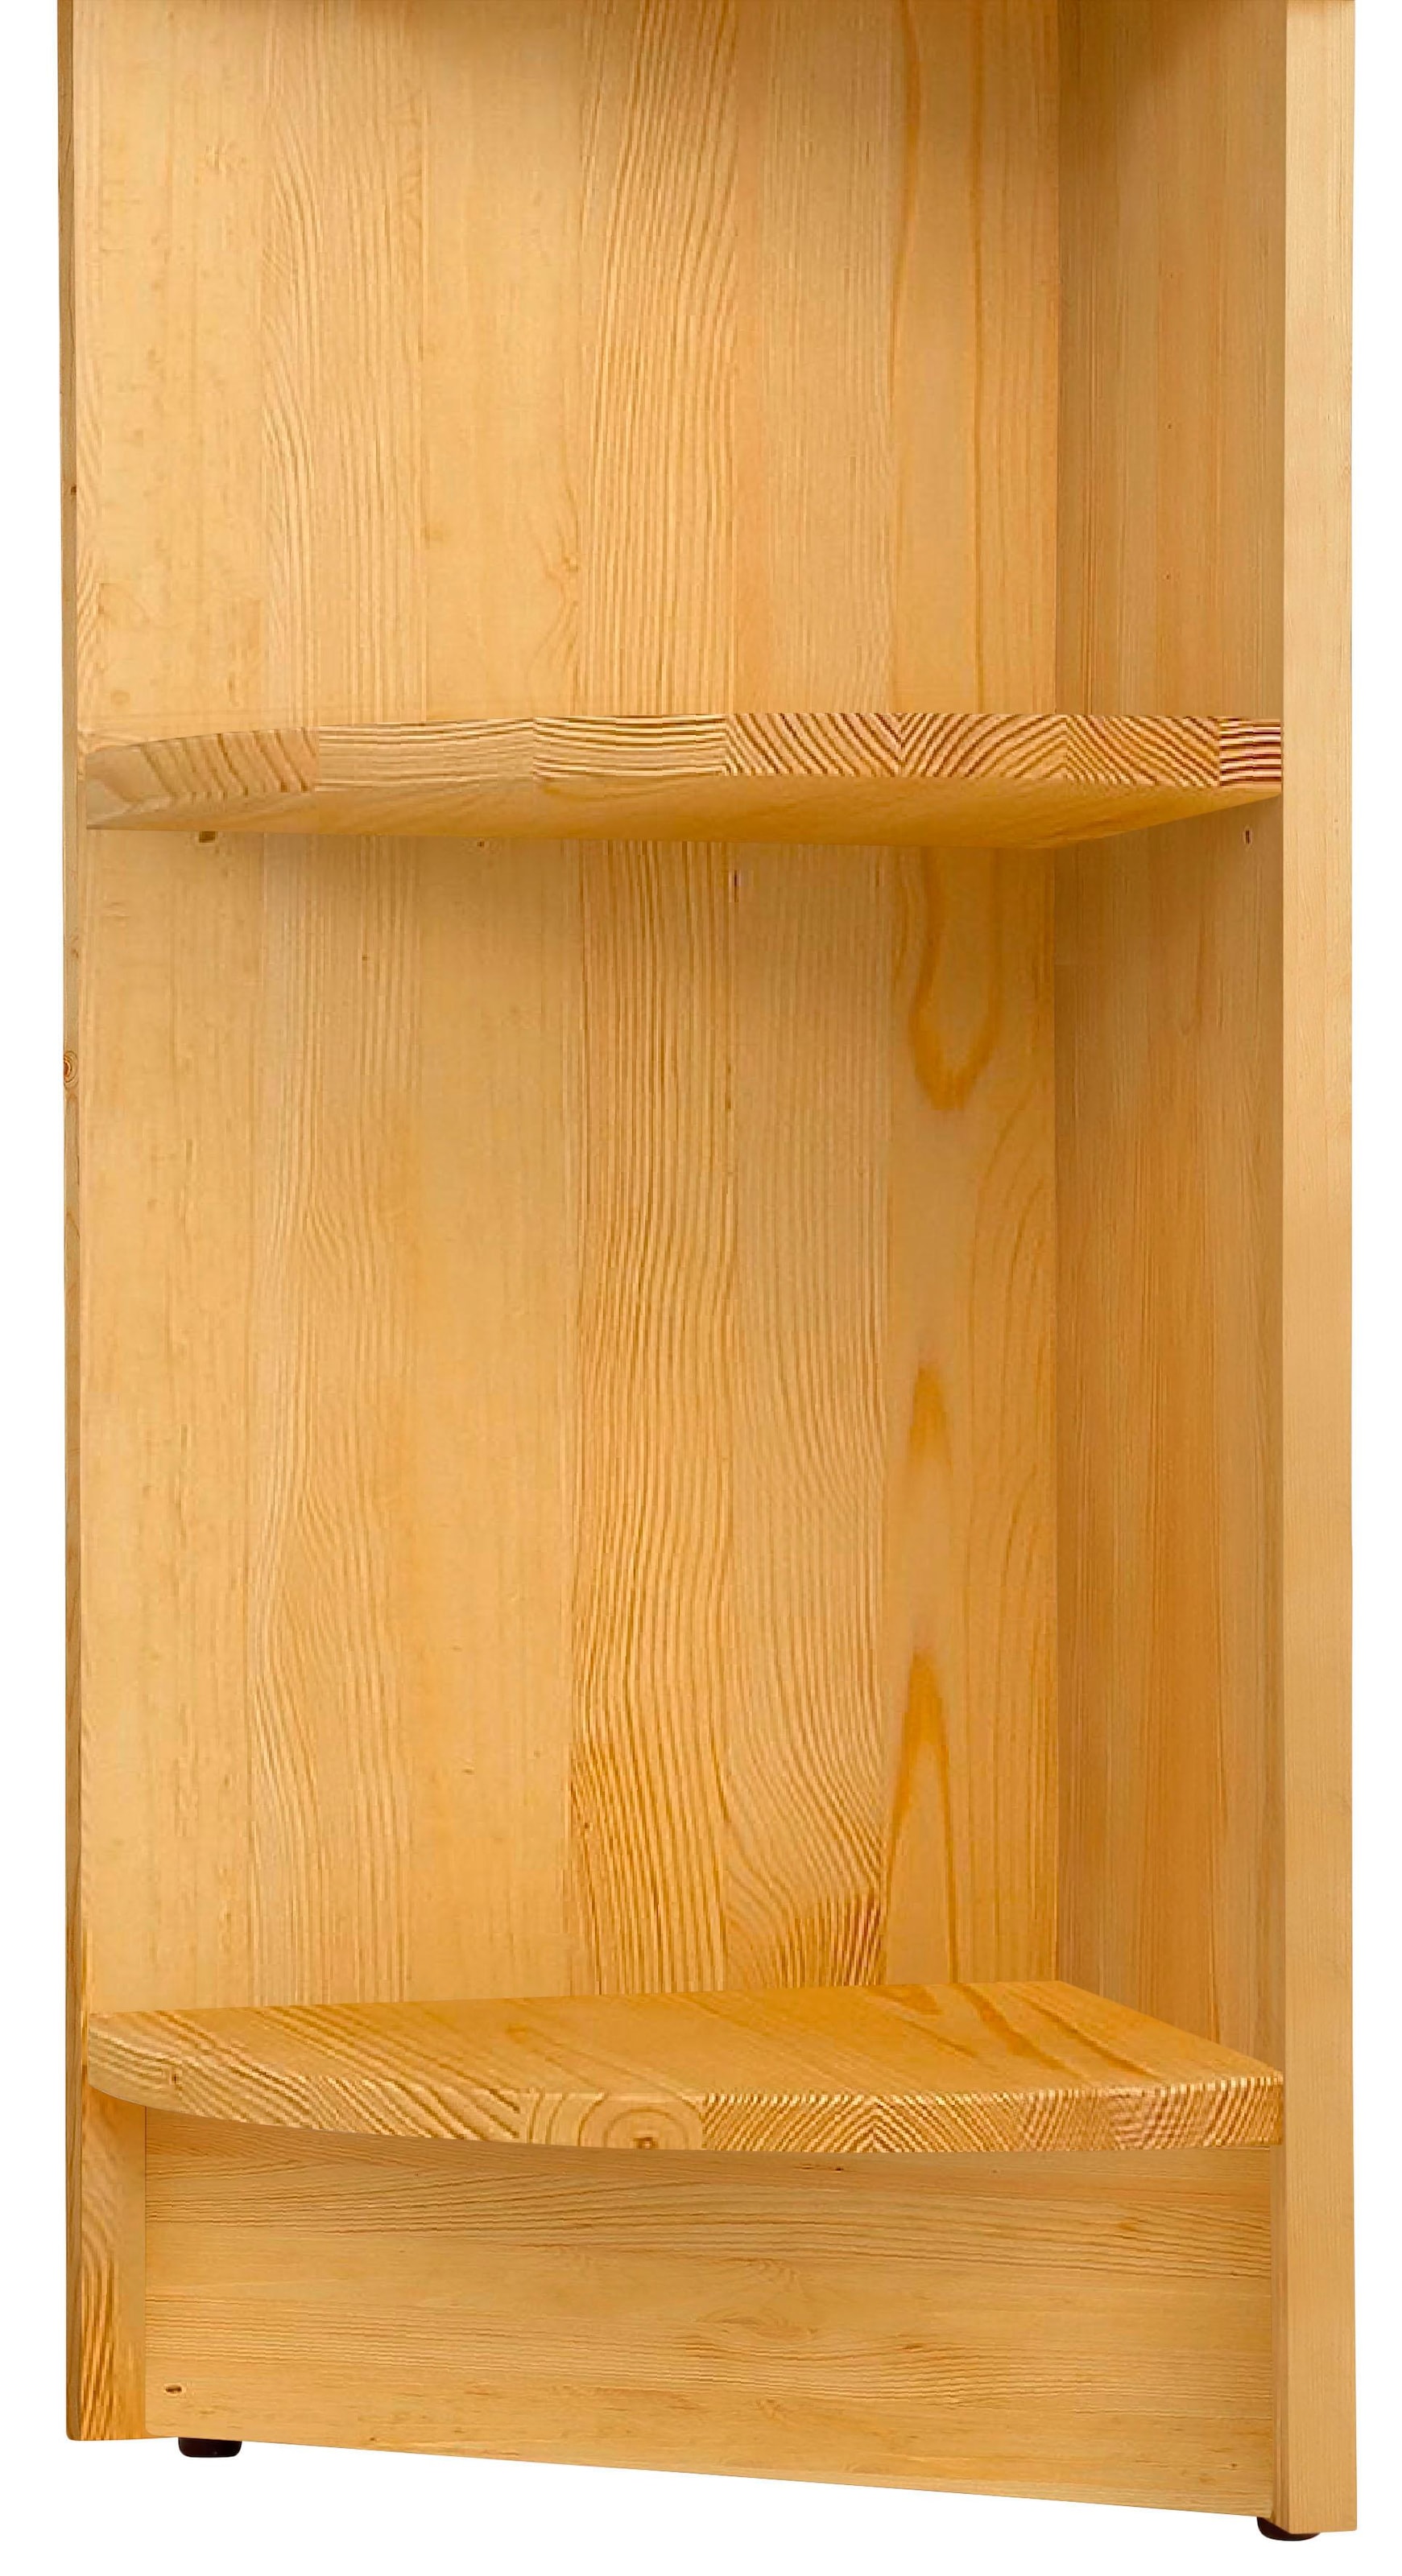 Home affaire Anbauregal »Soeren«, aus massiver Kiefer, Höhe 220 cm, Tiefe 29 cm